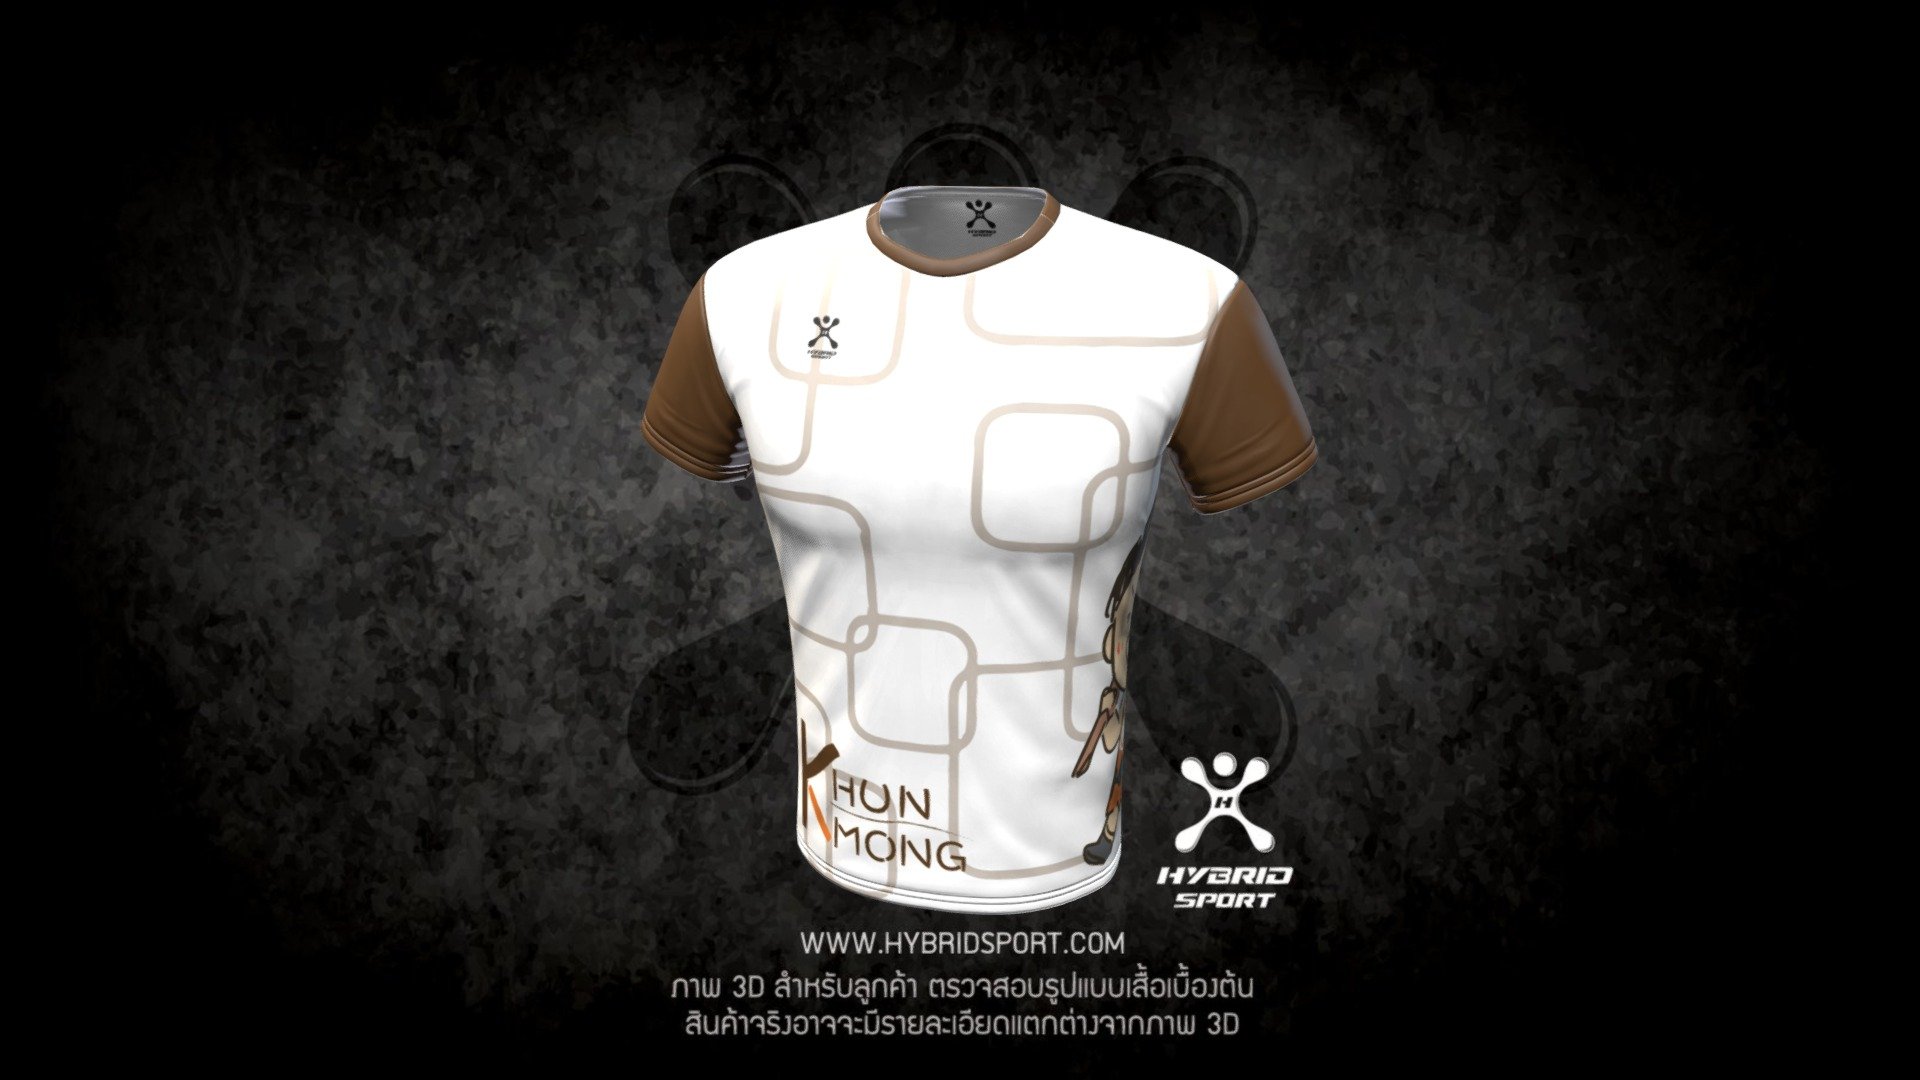 HYBRID SPORT

ภาพ 3D ในรูปใช้สำหรับให้ทางลูกค้าได้ดูตัวอย่างเสื้อเบื้องต้นเท่านั้น สินค้าจริงอาจจะมีรายละเอียดแตกต่างจากภาพ 3D นี้ - Khun Mong White T-shirt - 3D model by HYBRID SPORT (@Kittipong.Ruayfuphan.Ice) 3d model